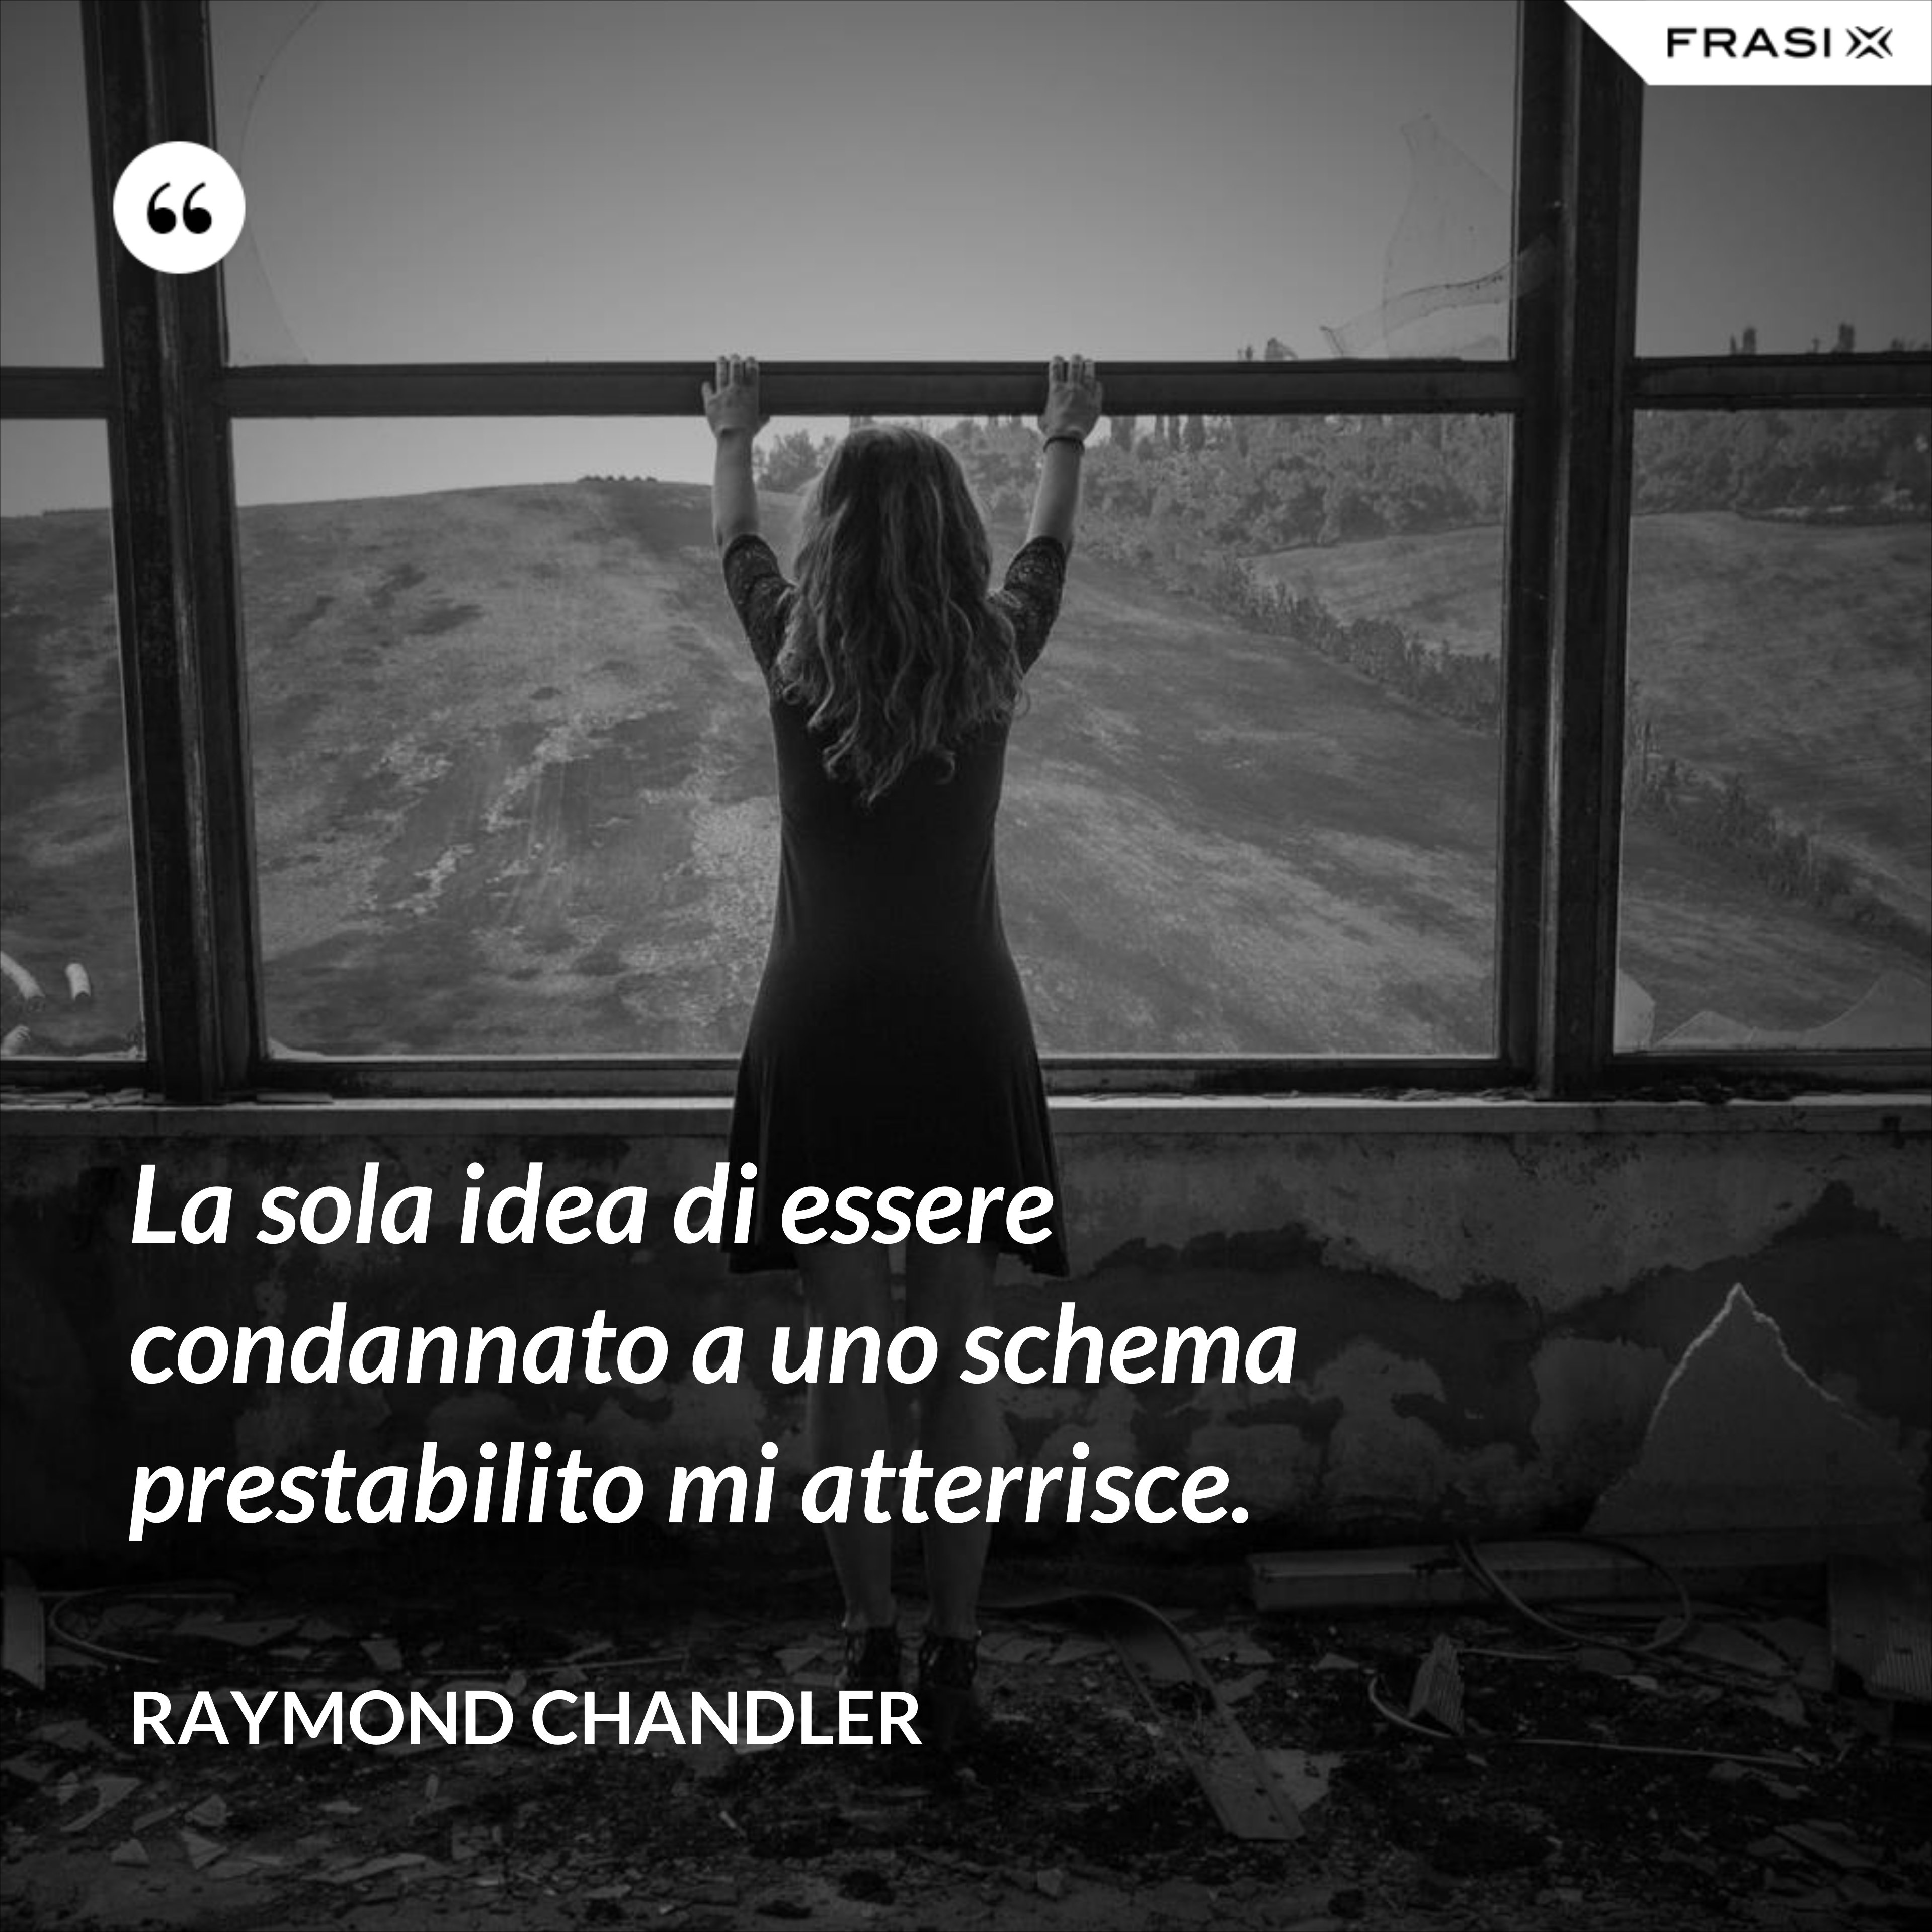 La sola idea di essere condannato a uno schema prestabilito mi atterrisce. - Raymond Chandler